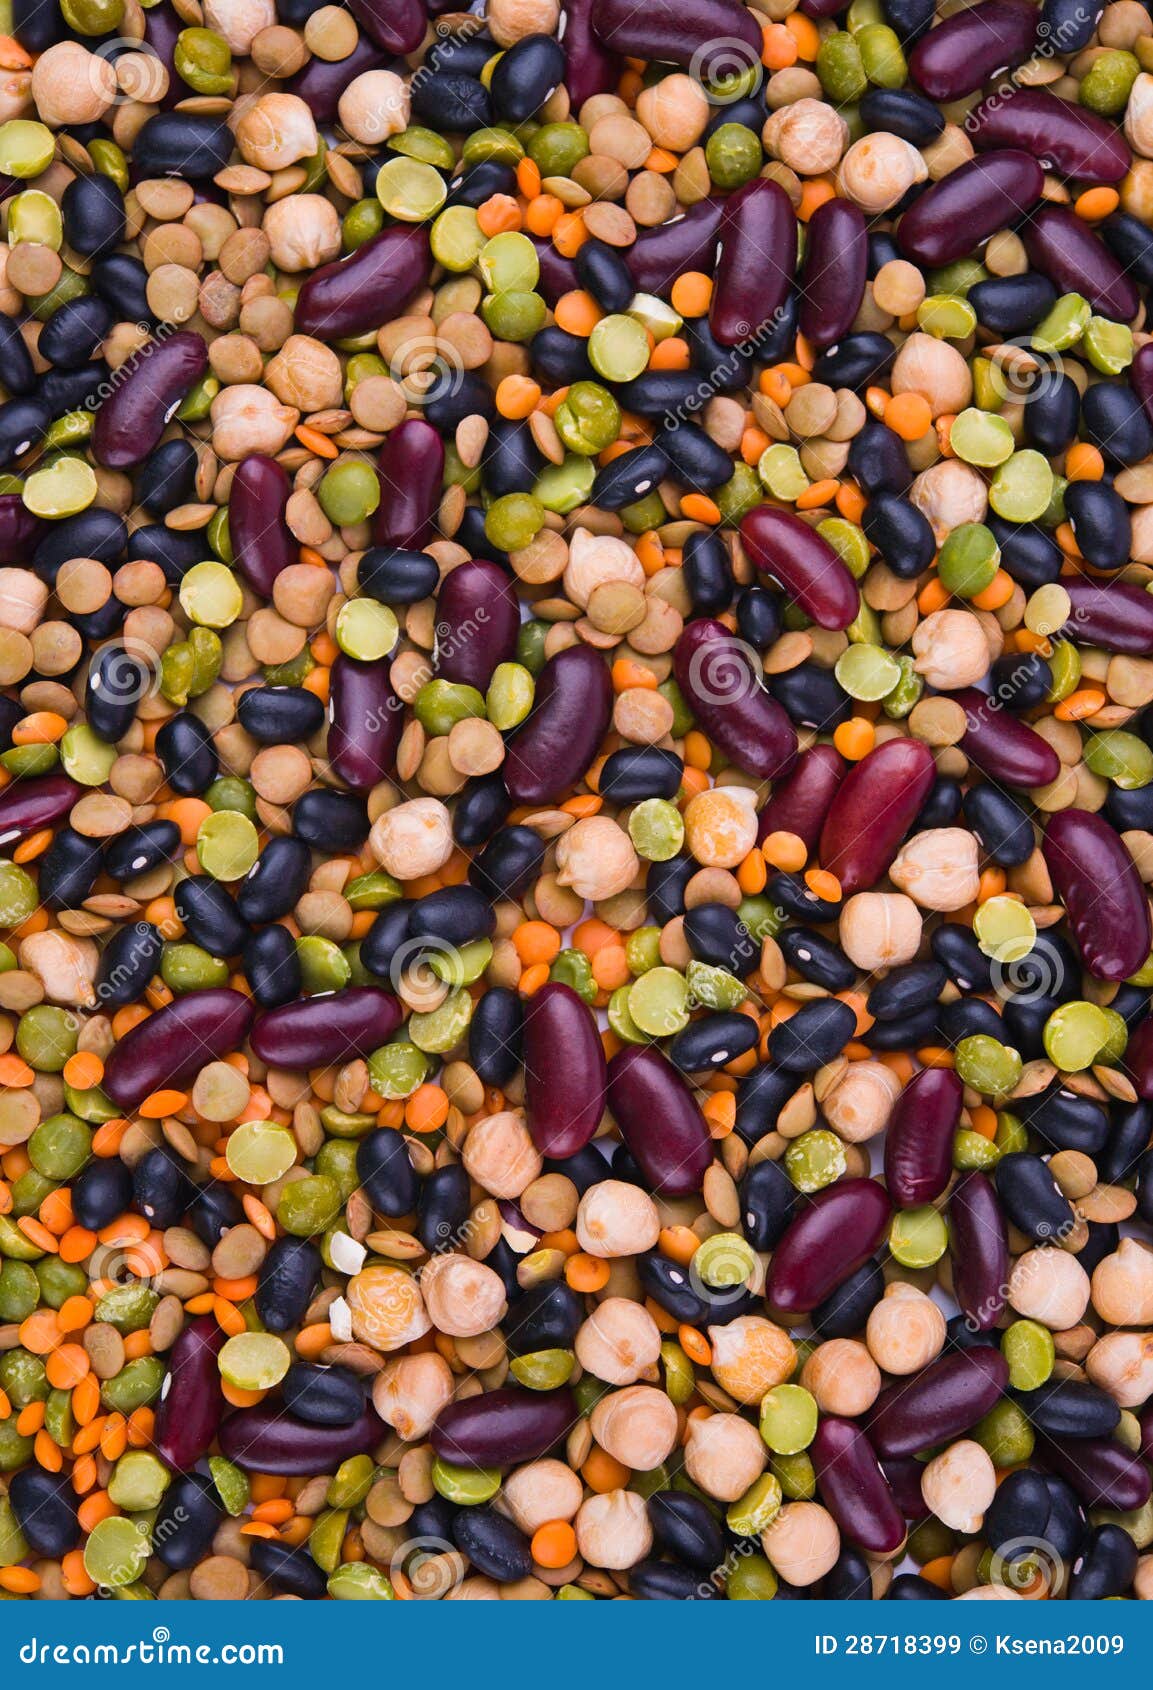 鸡豆选择聚焦 库存图片. 图片 包括有 阿拉伯人, 豆类, 食物, 豌豆, 小鸡, 营养, 蛋白质, 没人 - 97198169